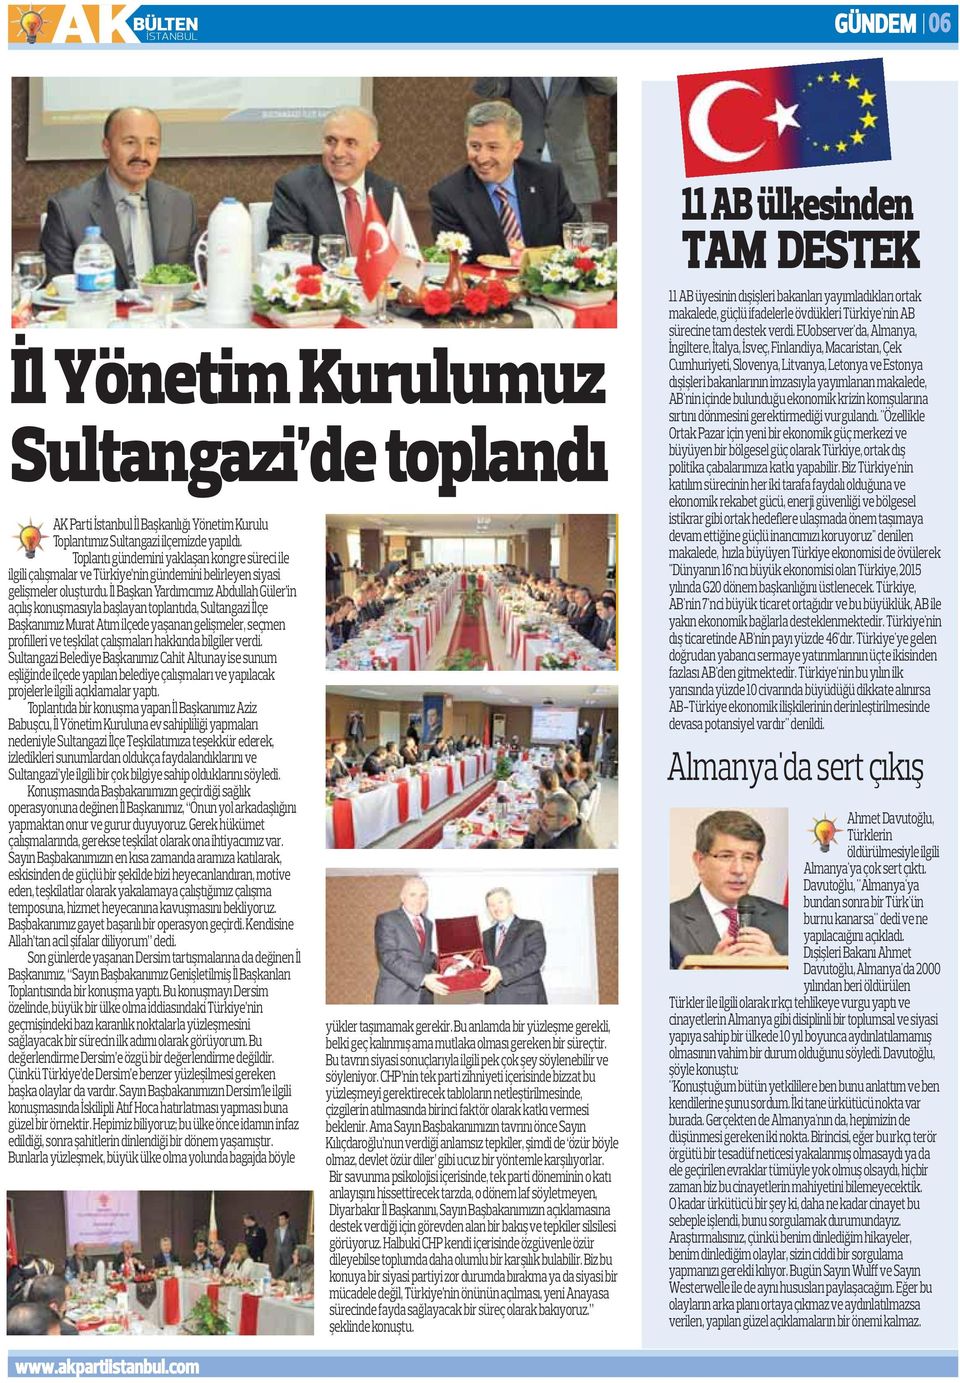 İl Başkan Yardımcımız Abdullah Güler in açılış konuşmasıyla başlayan toplantıda, Sultangazi İlçe Başkanımız Murat Atım ilçede yaşanan gelişmeler, seçmen profilleri ve teşkilat çalışmaları hakkında